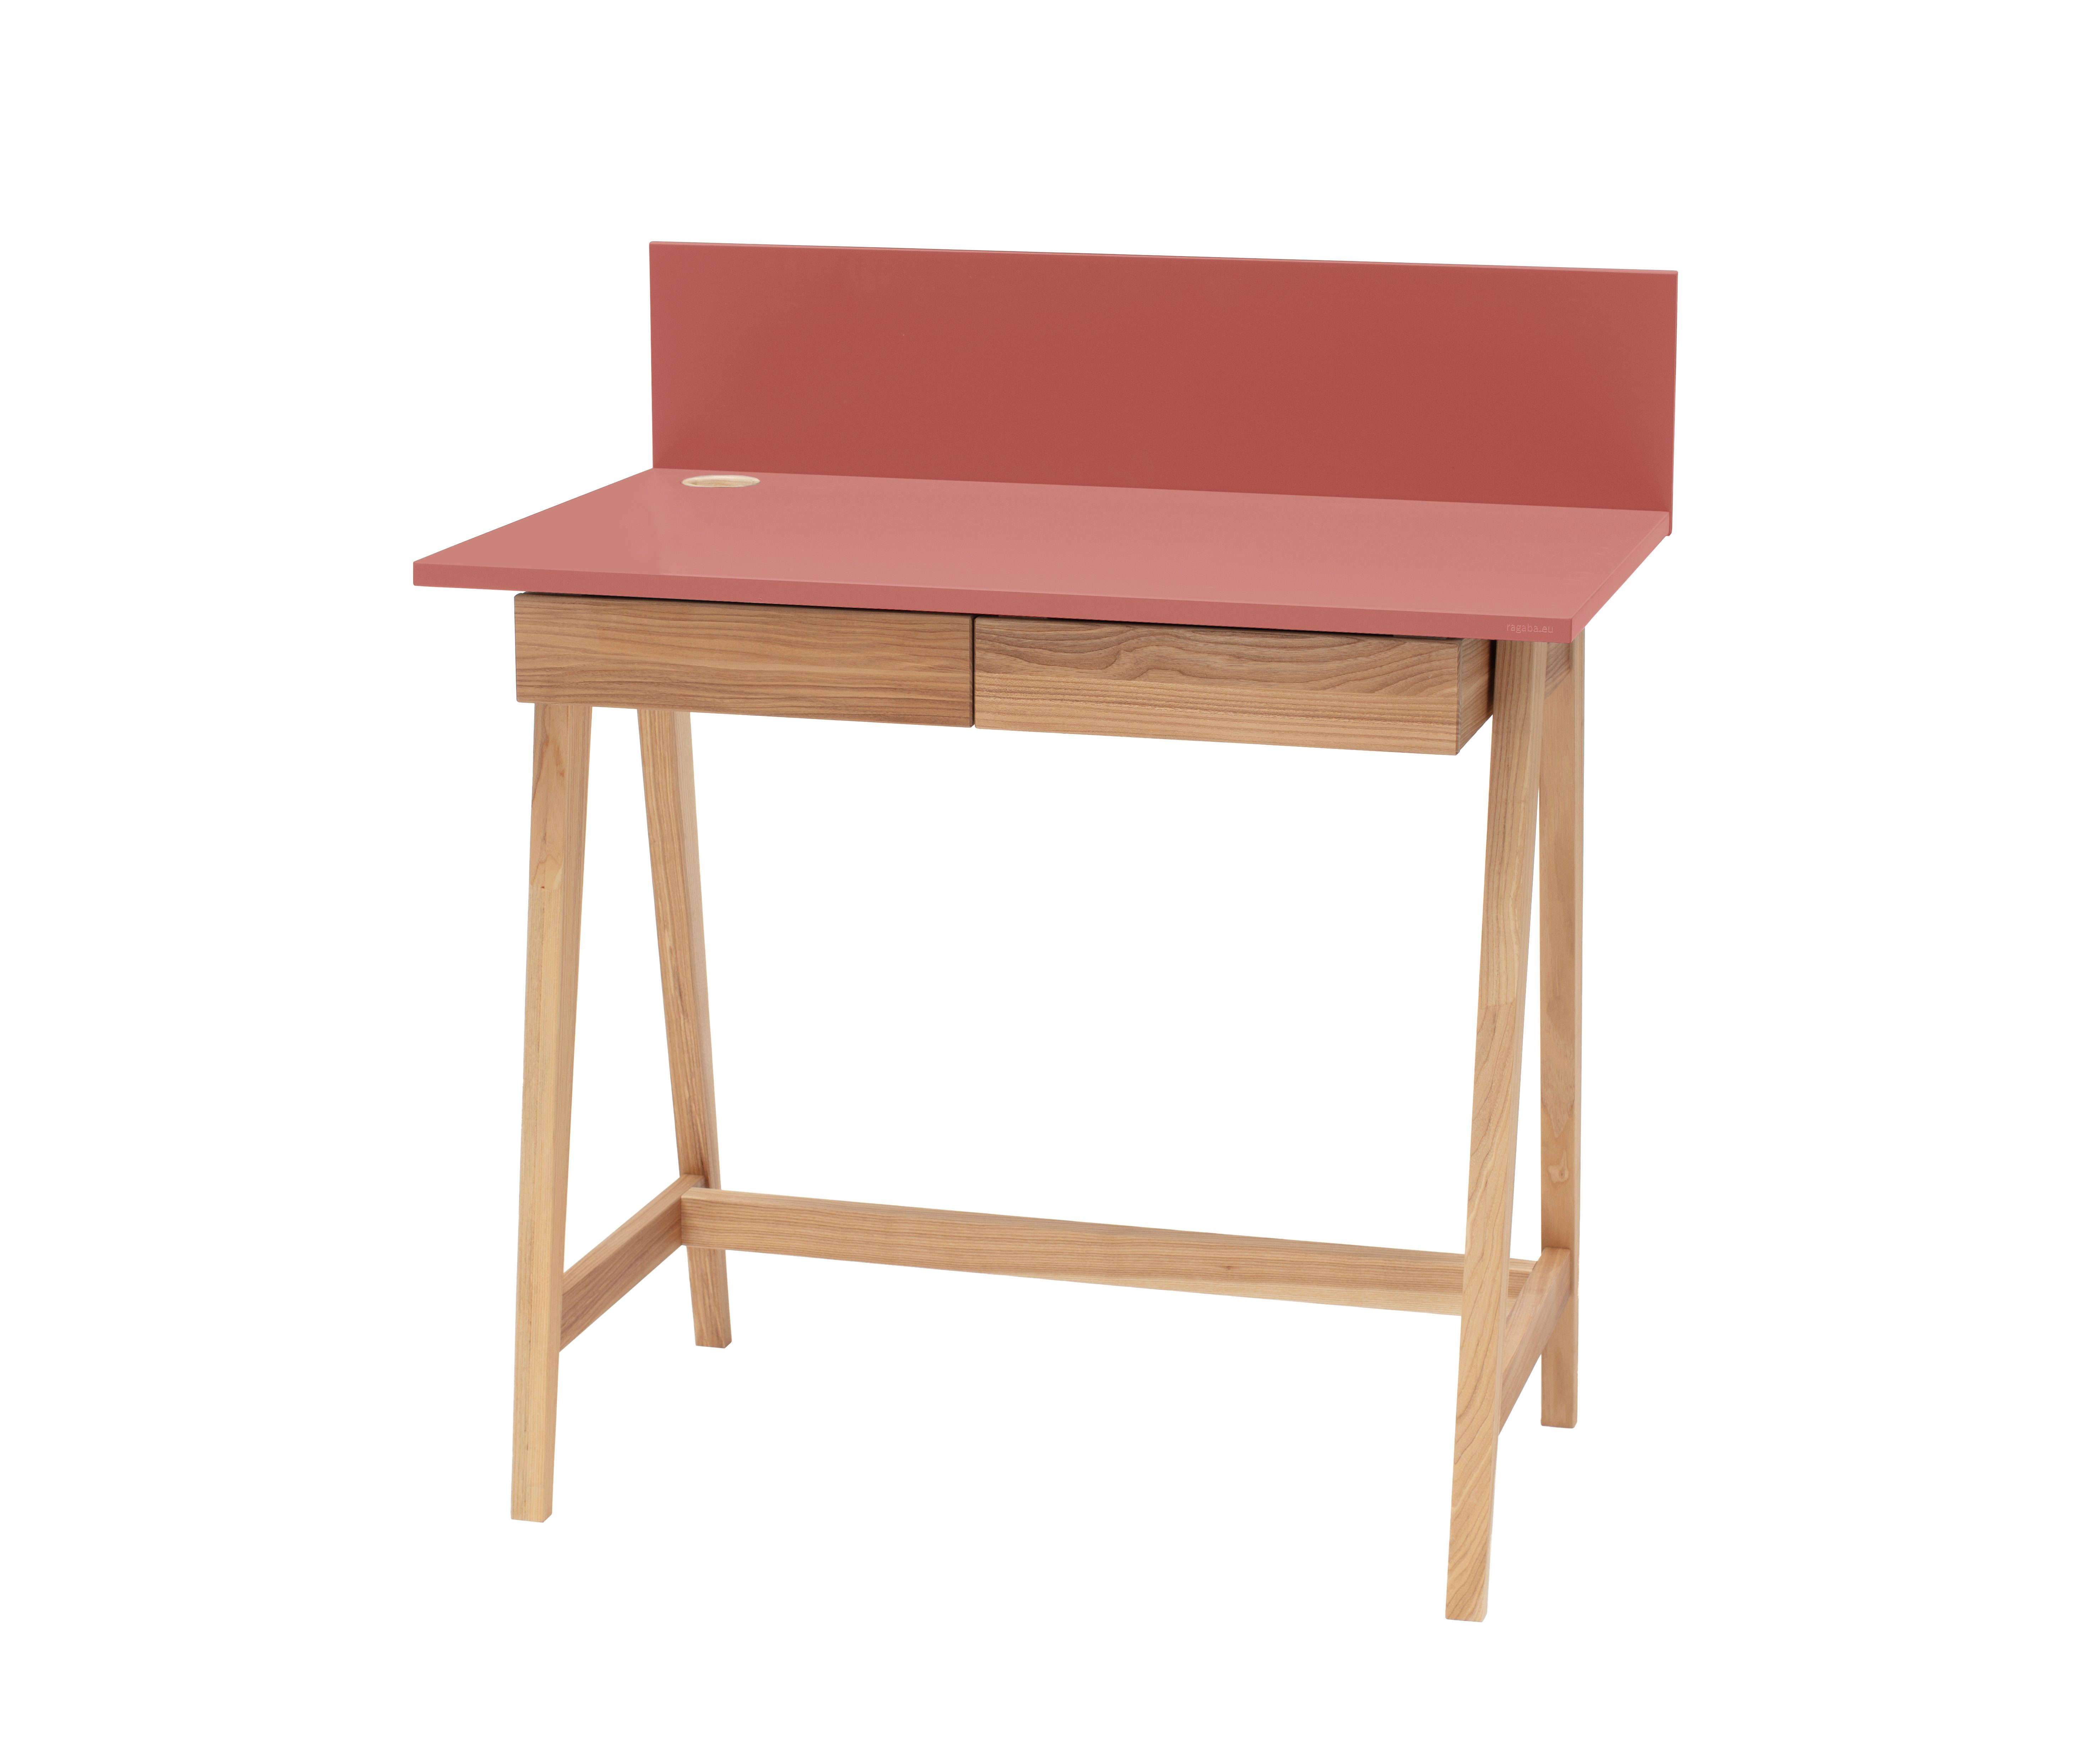 Siblo Schreibtisch Kinderschreibtisch Andrea mit Schubladen - Bunter Schreibtisch - minimalistisches Design - Kinderzimmer - MDF-Platte - Eschenholz (Kinderschreibtisch Andrea mit Schubladen) Rosa